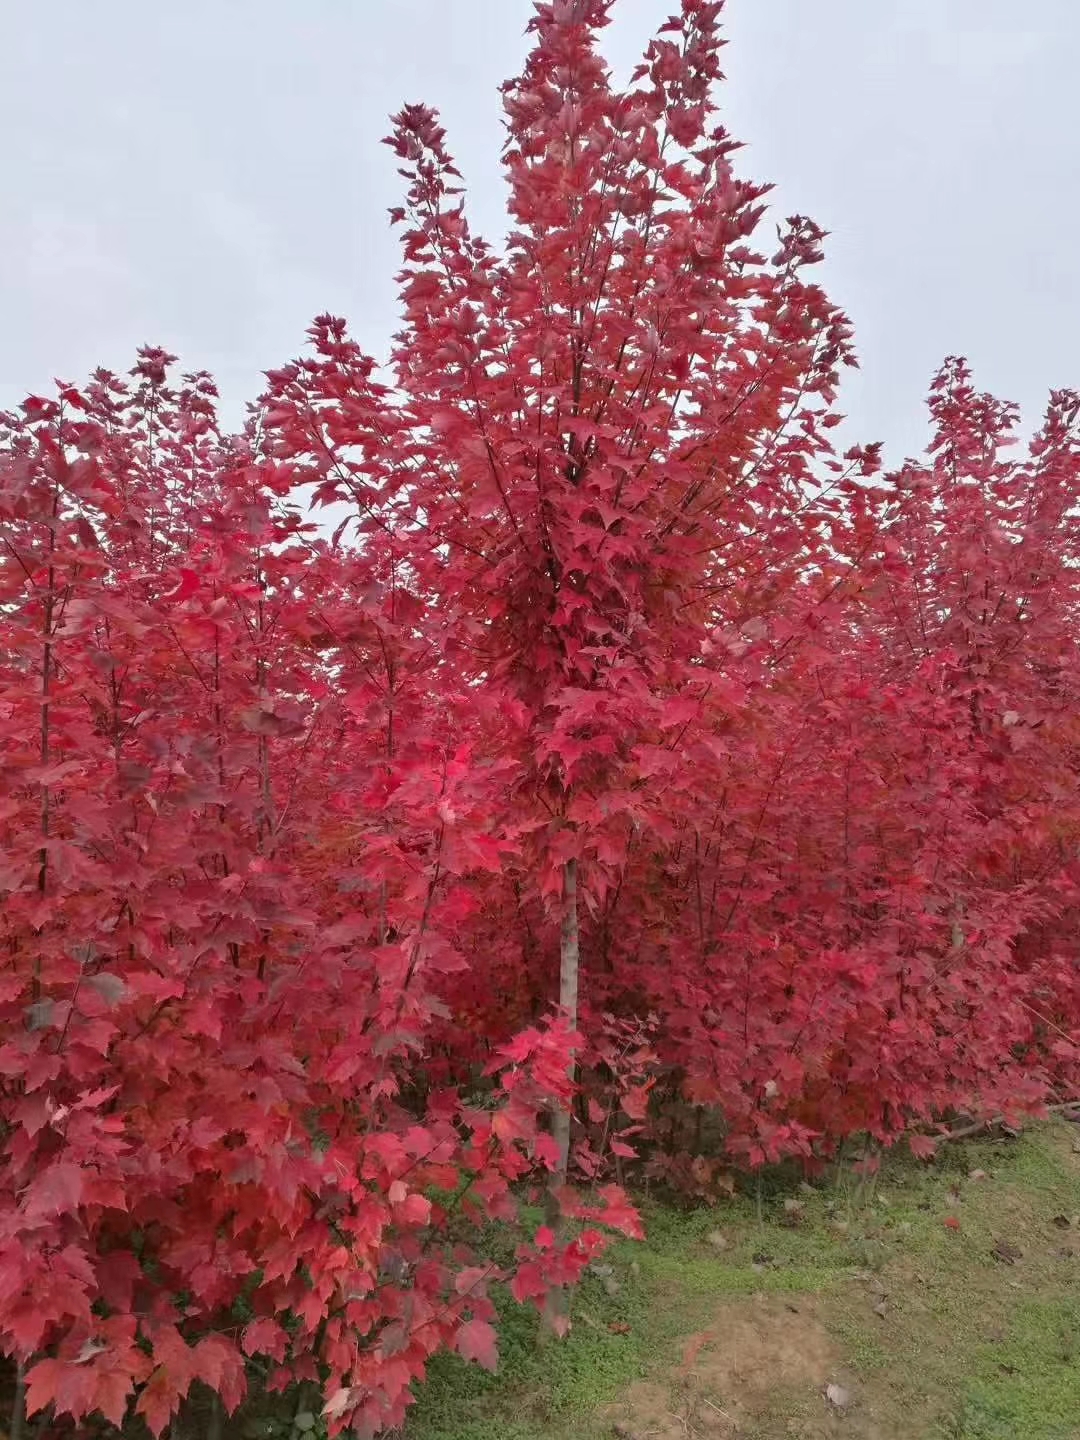 沭阳赛锦园林美国红枫红冠图片 占地树苗适合伊犁栽植